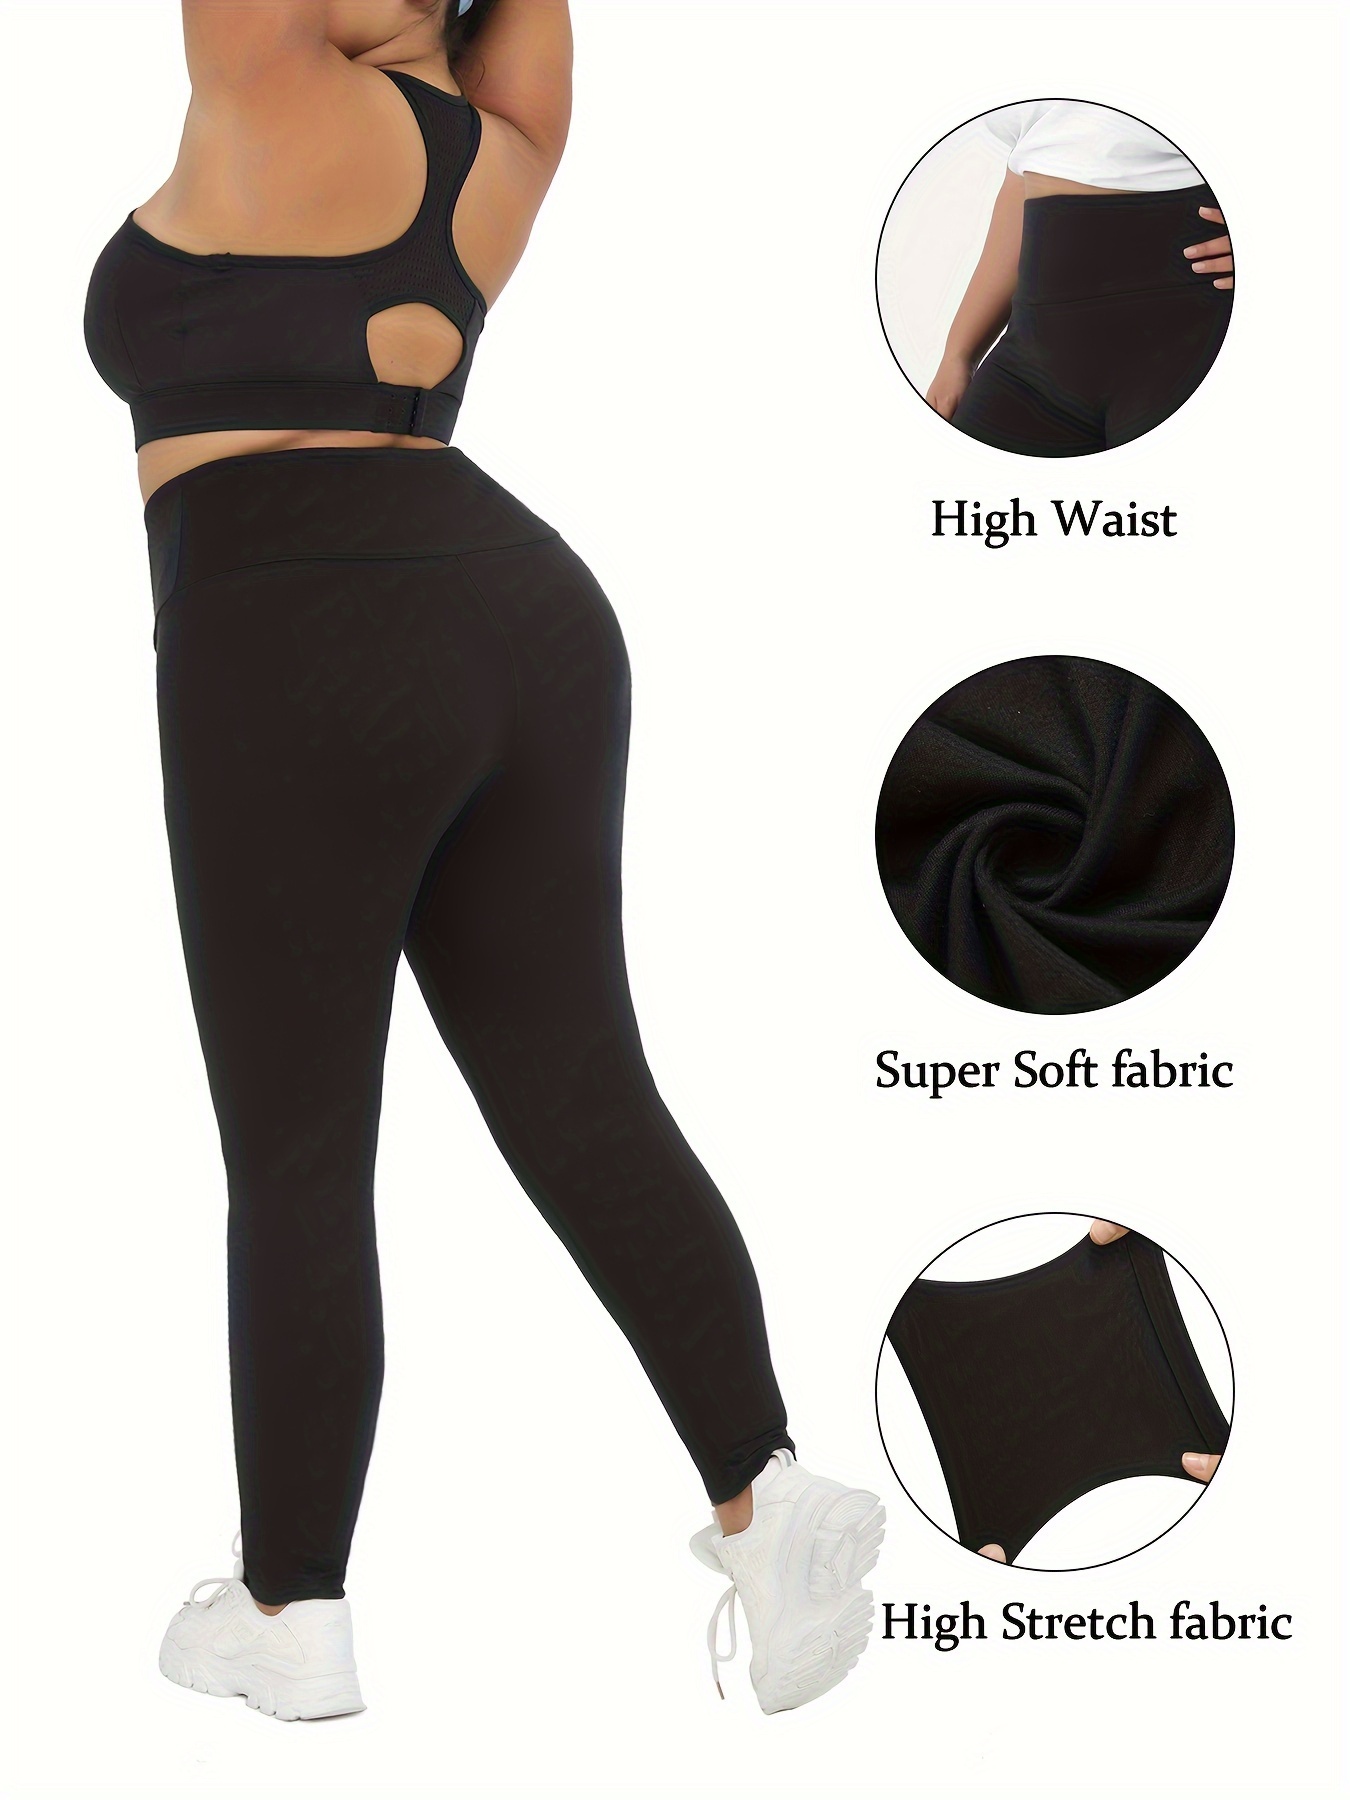 Super Soft Black Leggings for Curvy Women